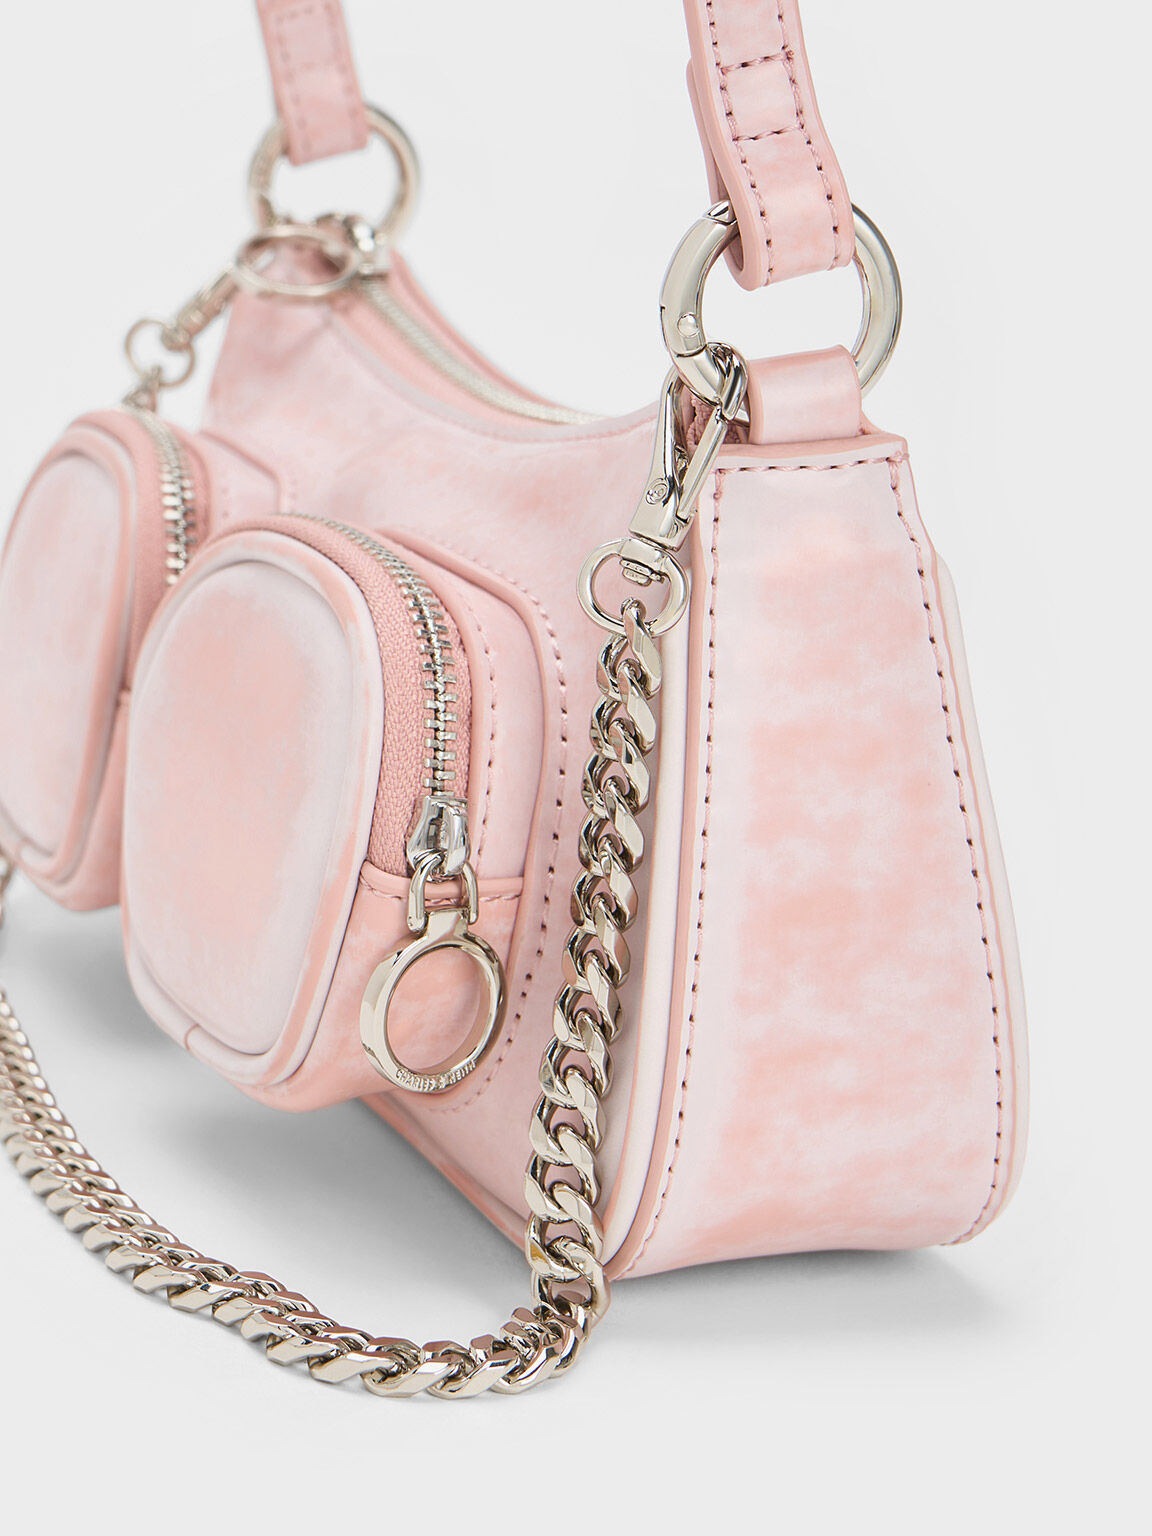 Rundt og rundt Afslag praktiserende læge Light Pink Letitia Chain-Link Shoulder Bag - CHARLES & KEITH US